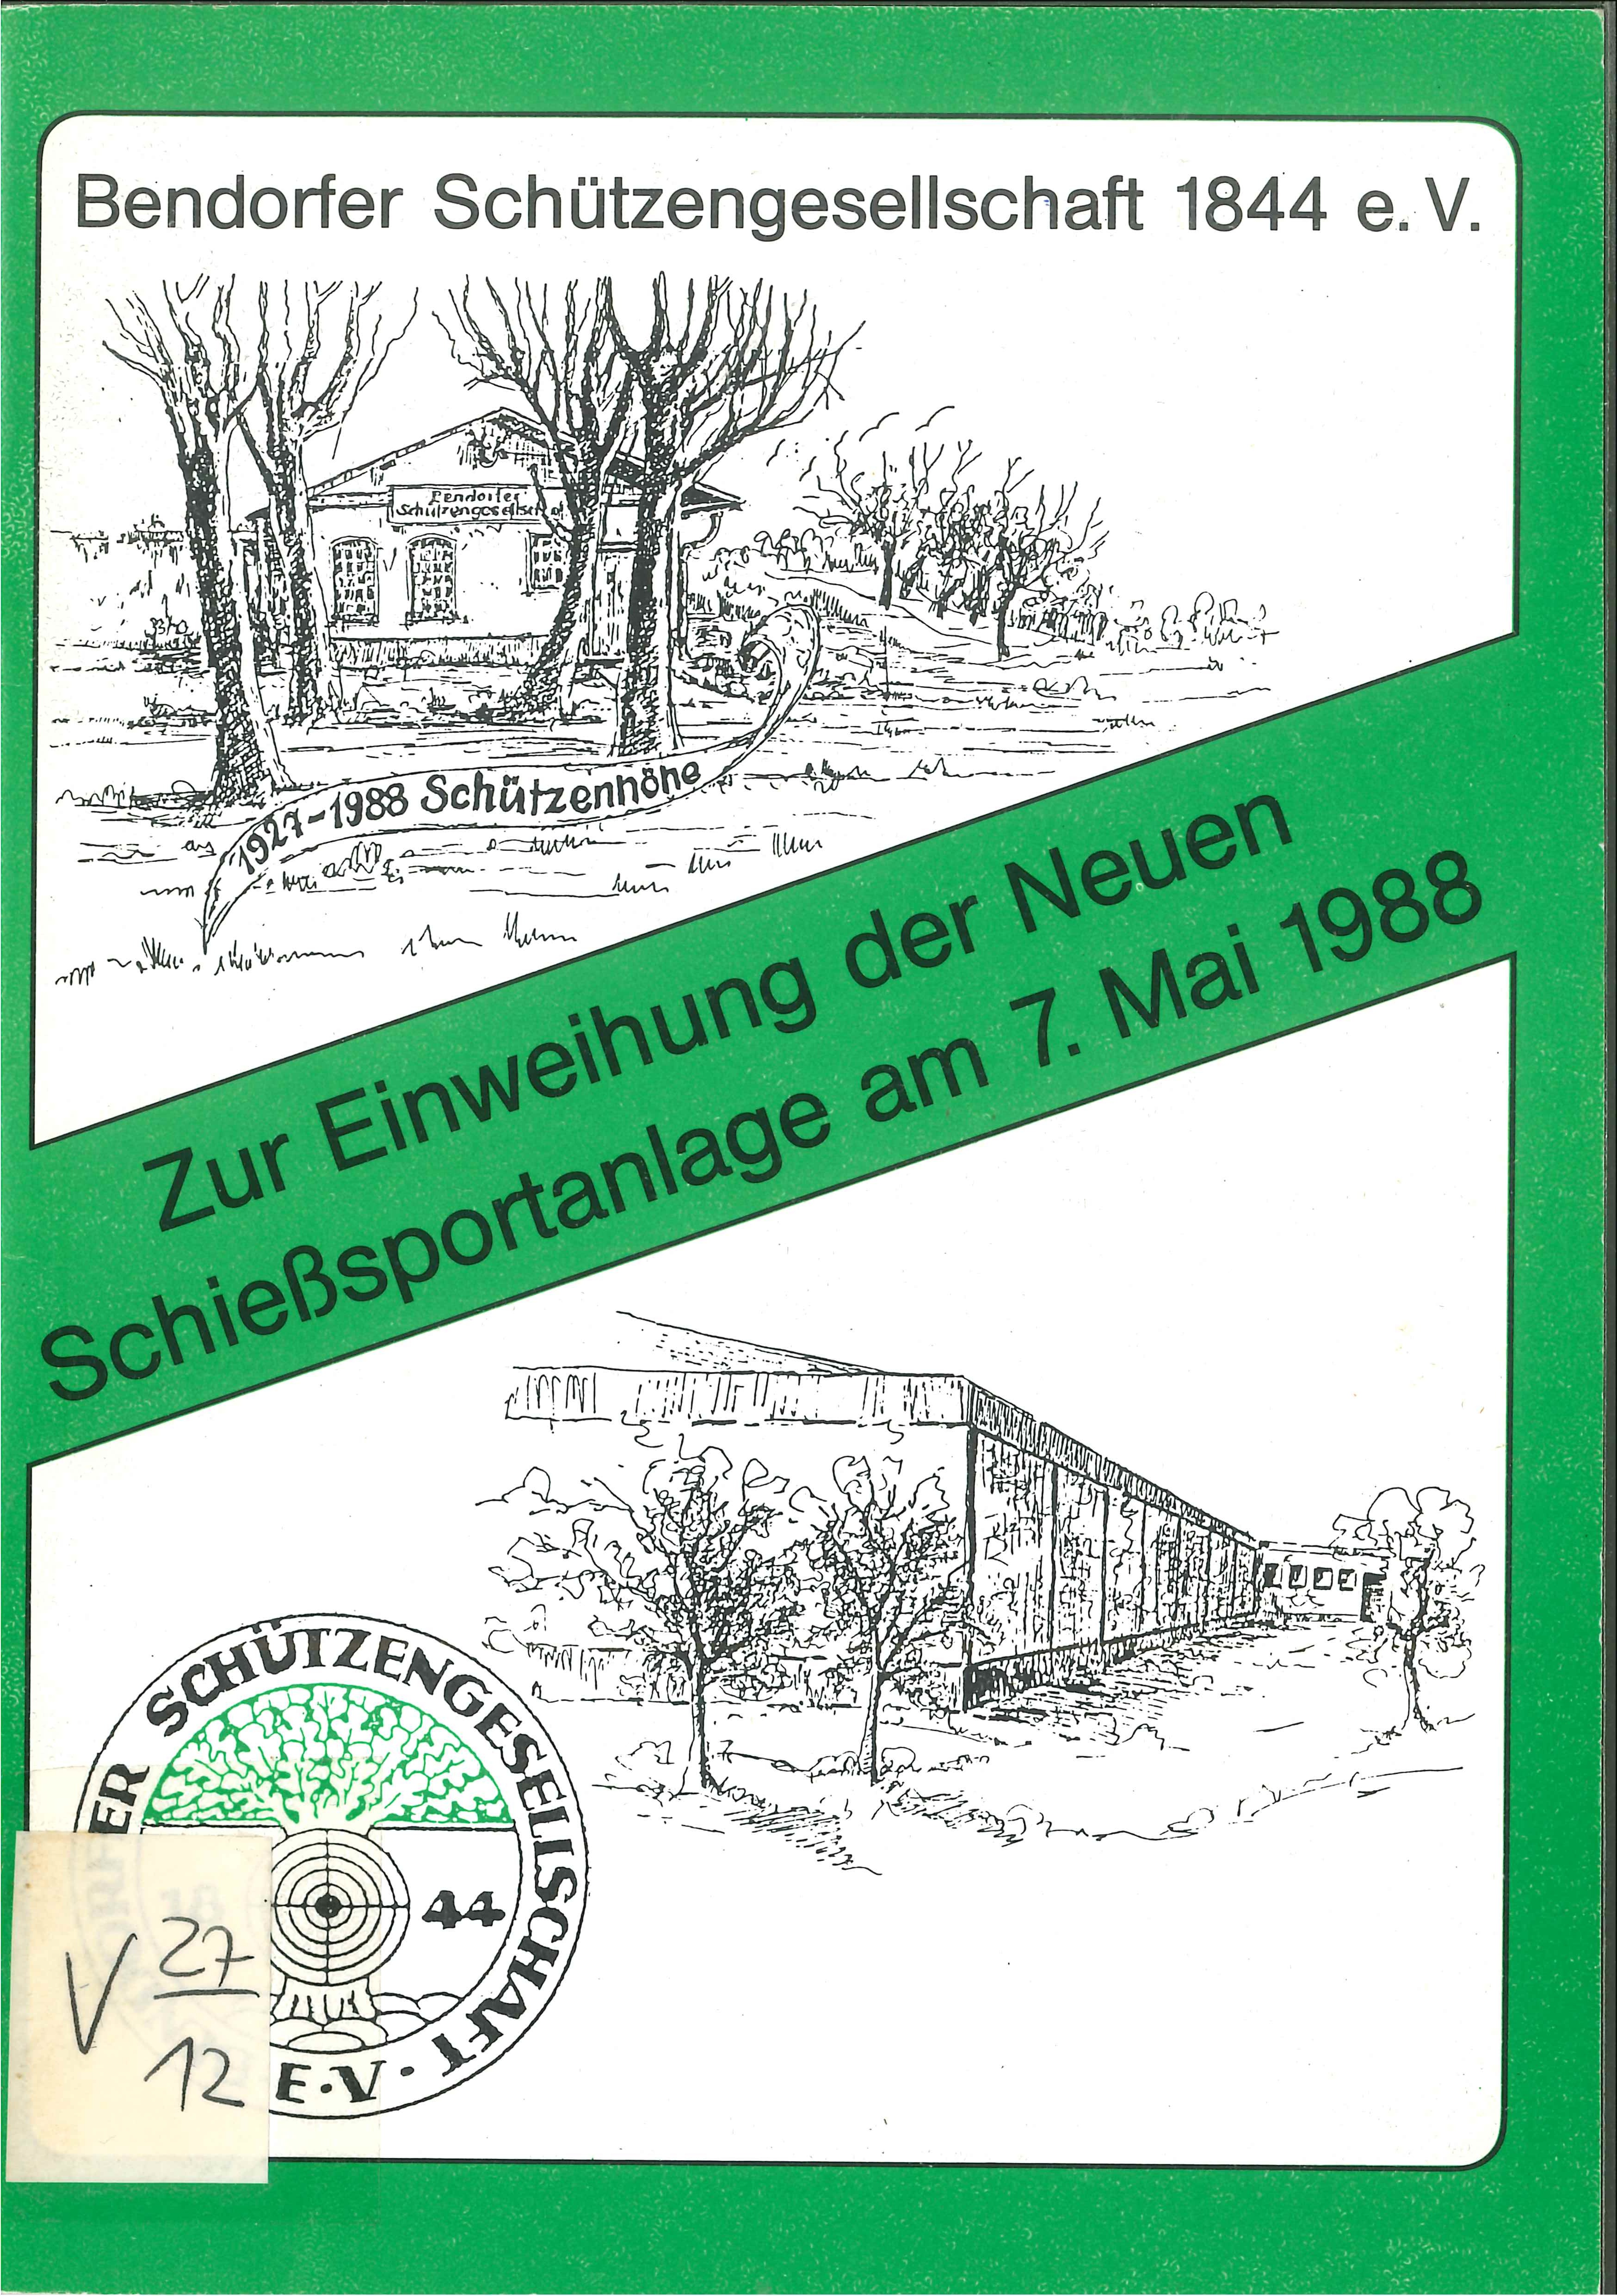 Festschrift zur Einweihung Schießanlage, Bendorf 1988 (Rheinisches Eisenkunstguss-Museum CC BY-NC-SA)